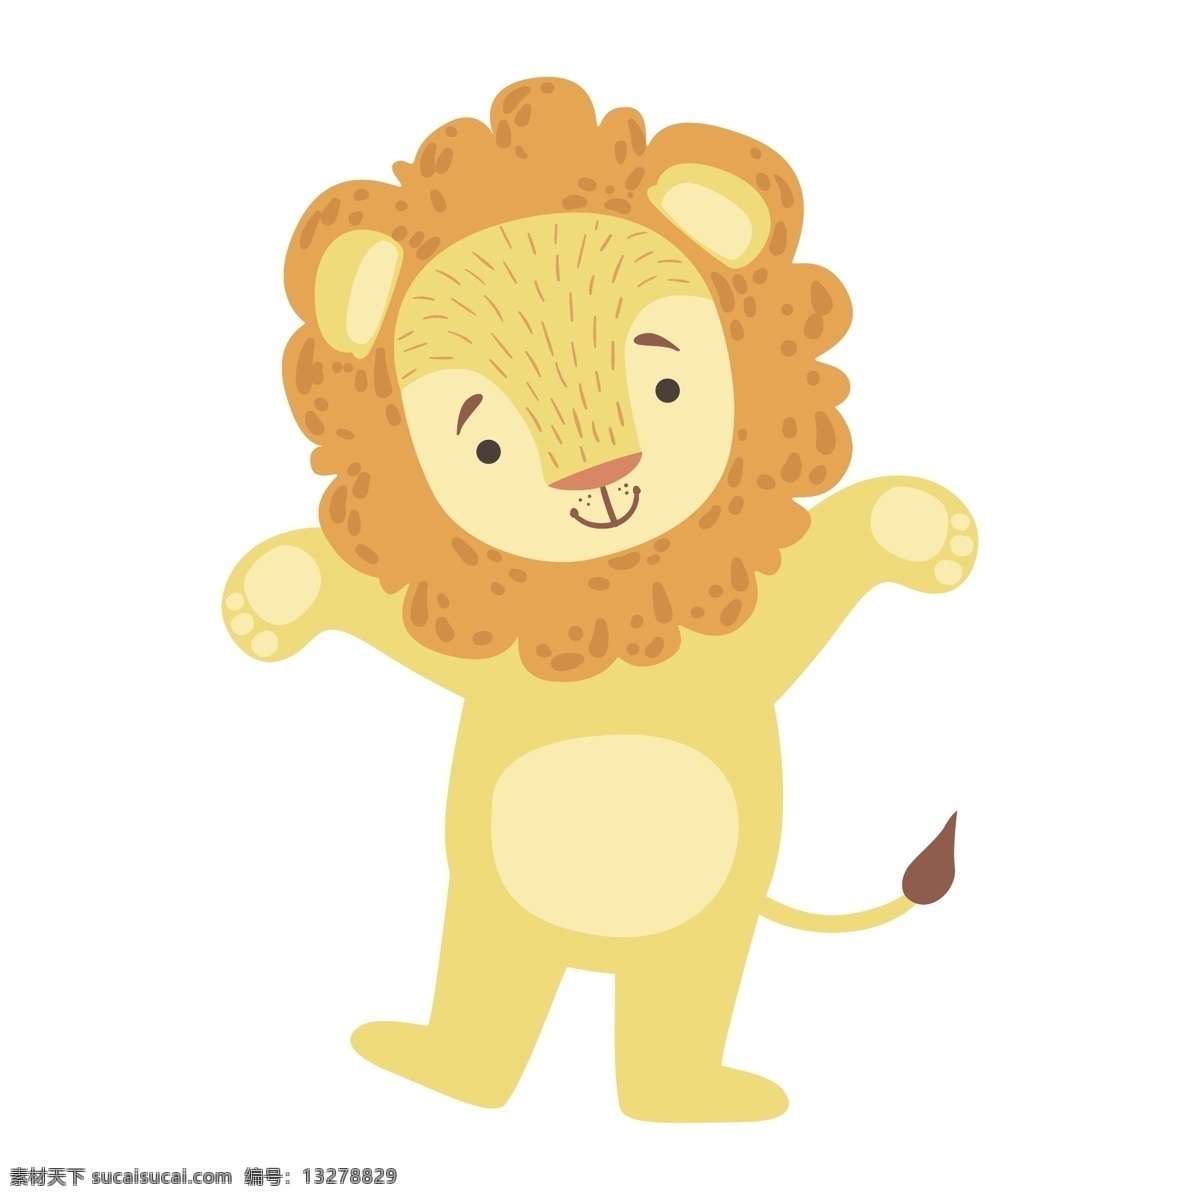 狮子 矢量狮子 手绘狮子 矢量卡通狮子 卡通动物 狮子卡通